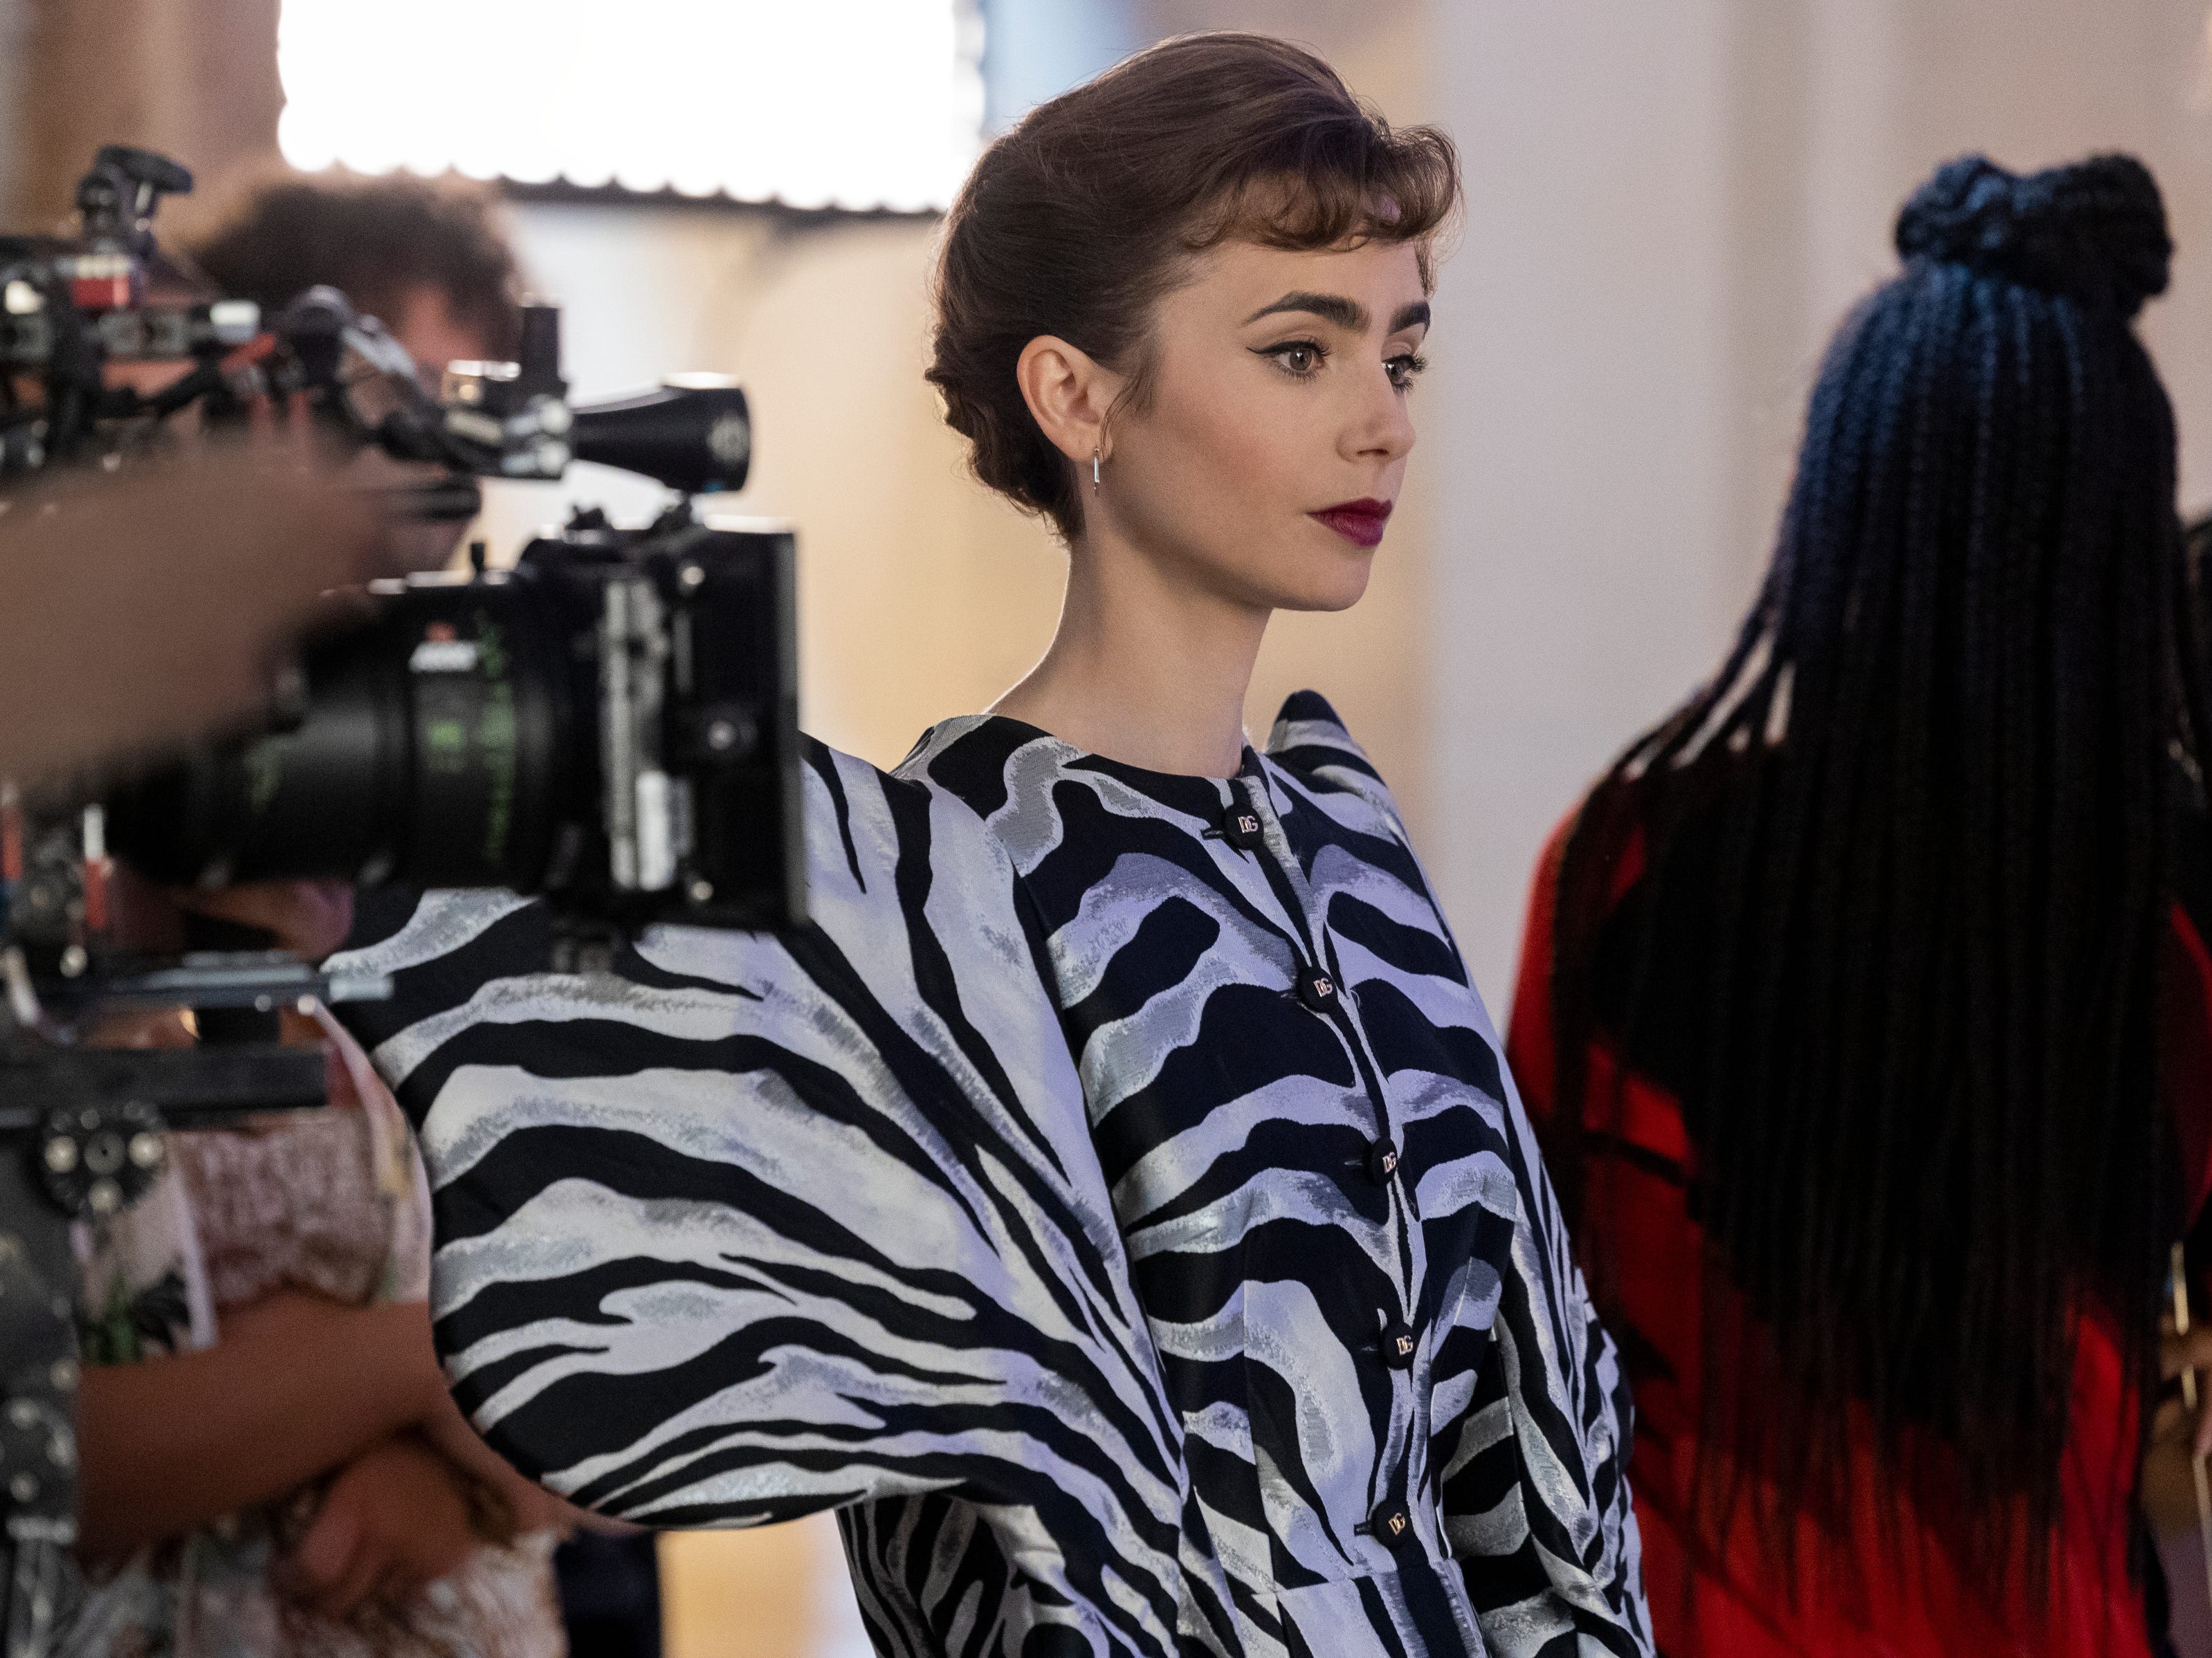 Lily Collins trägt die Jacke mit Zebramuster bei den Dreharbeiten zu „Emily in Paris“.